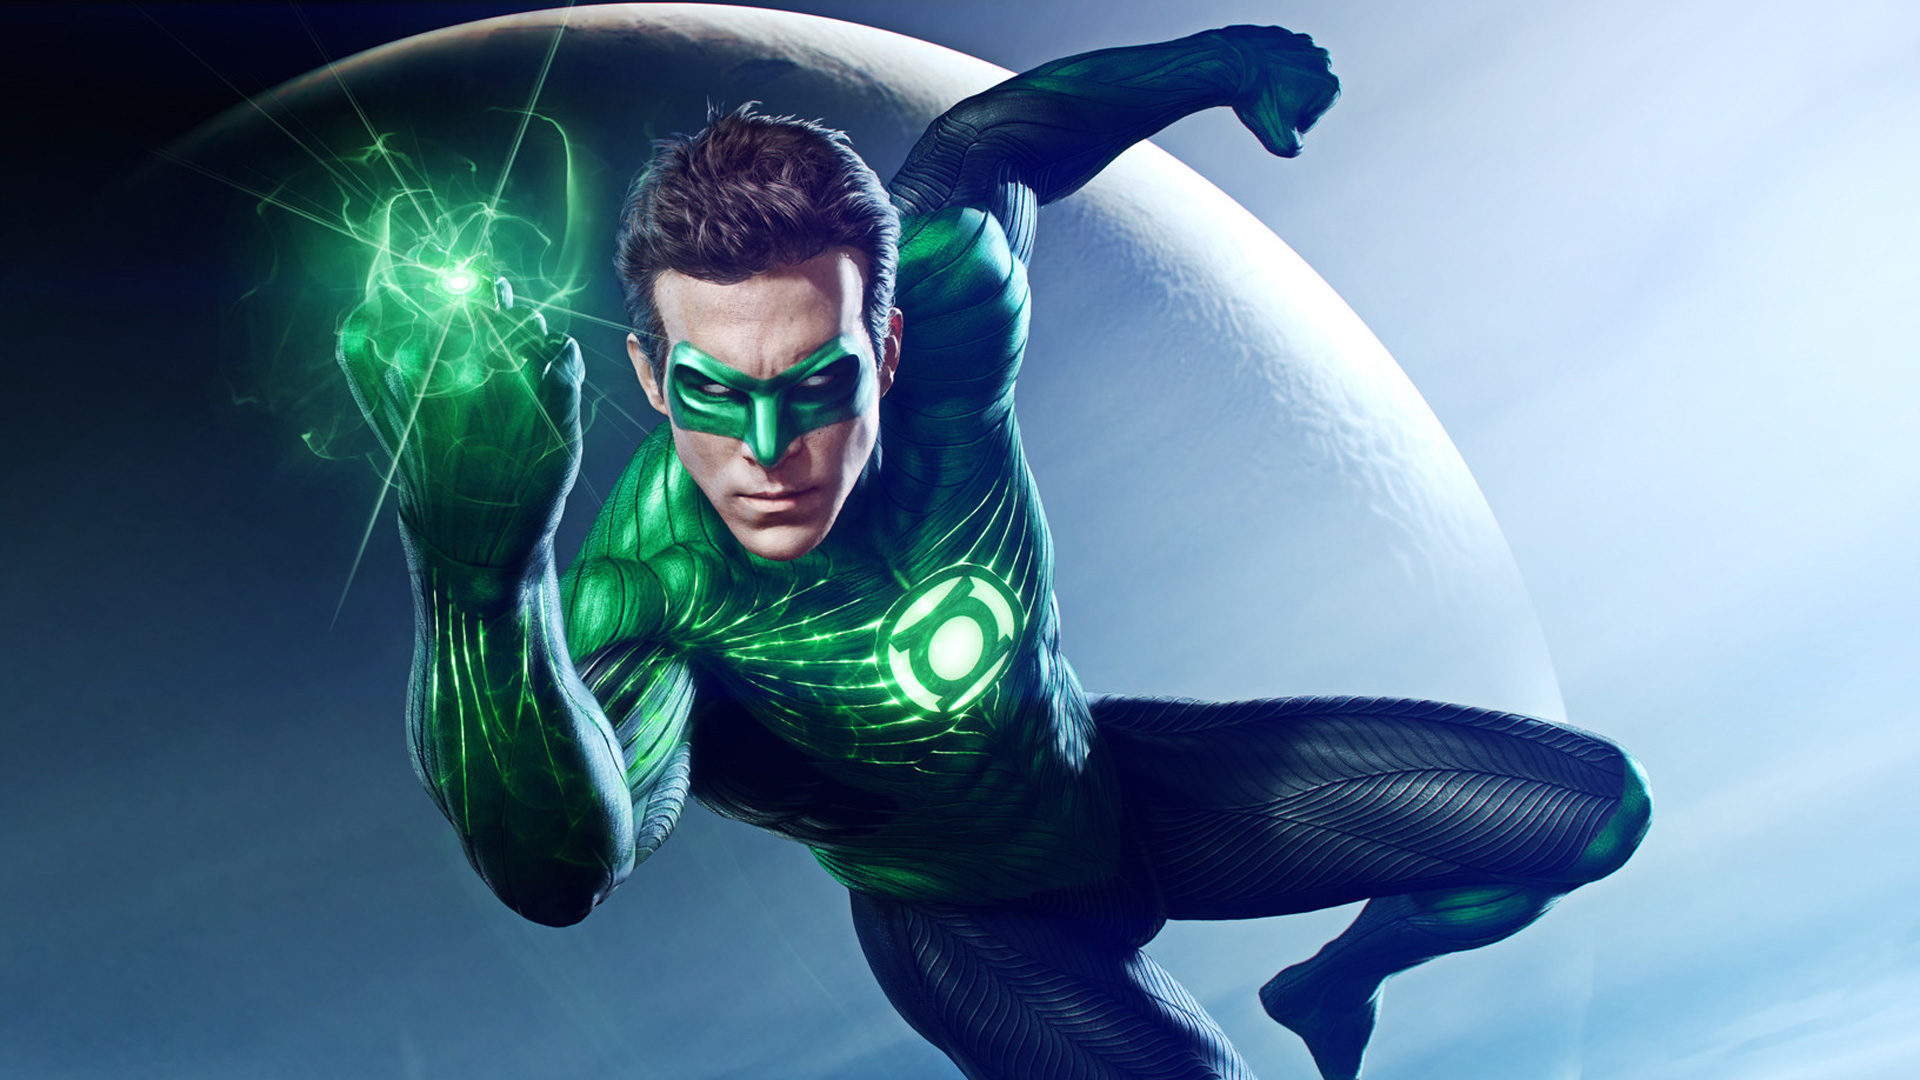 filosof kvalitet Narkoman Hal Jordan Is No Longer Green Lantern In The DC Movie Universe